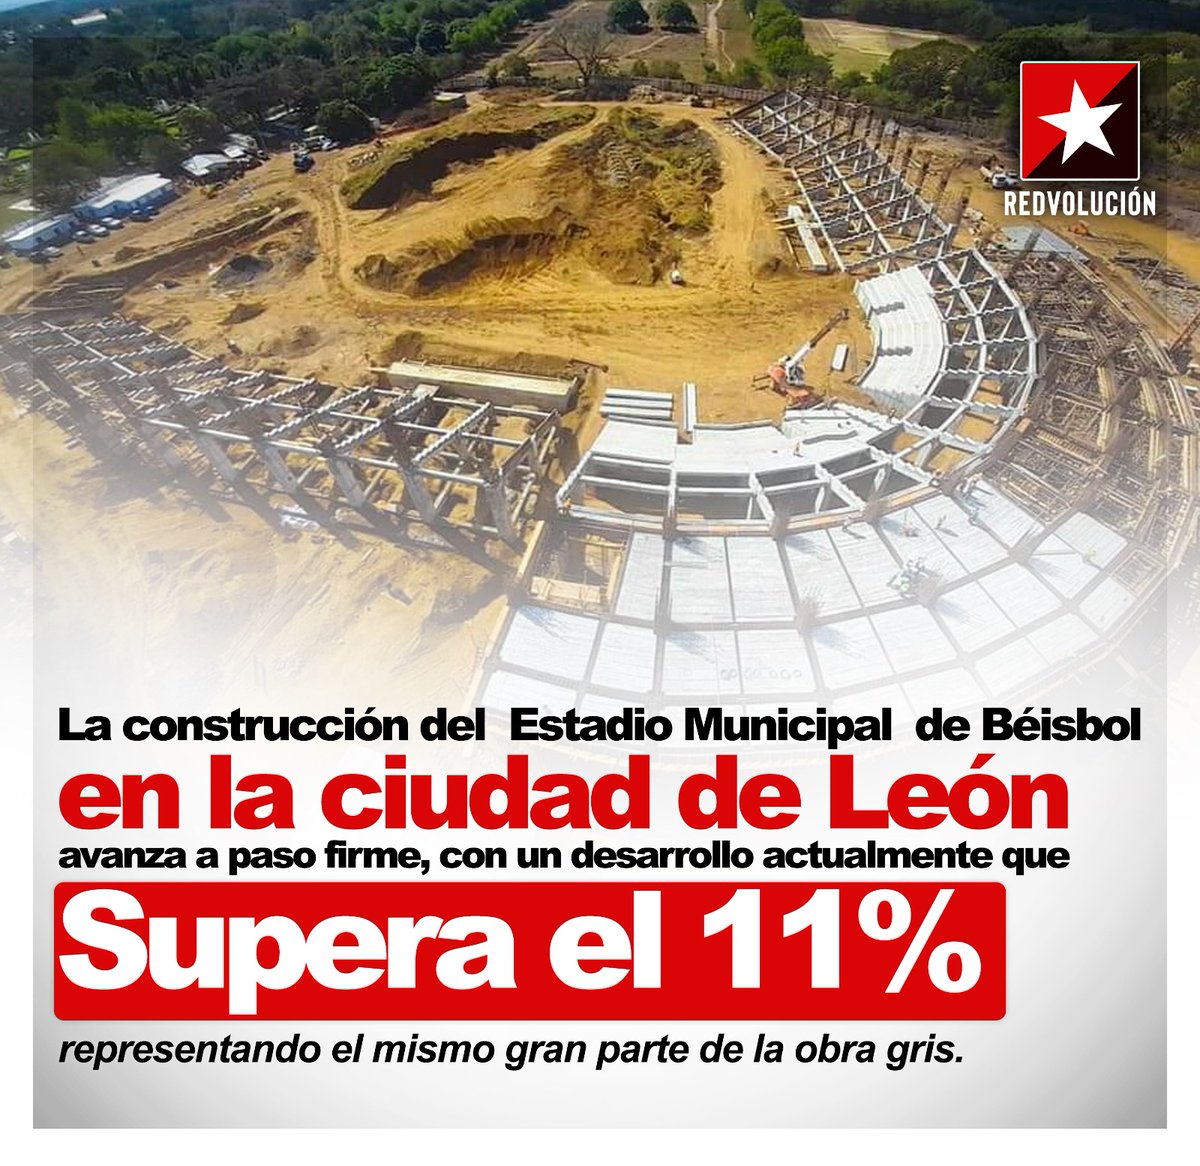 #Pomares2023
#VamosLeones
#LeonesCampeones 
Y así avanza el nuevo Estadio en nuestra ciudad de León.